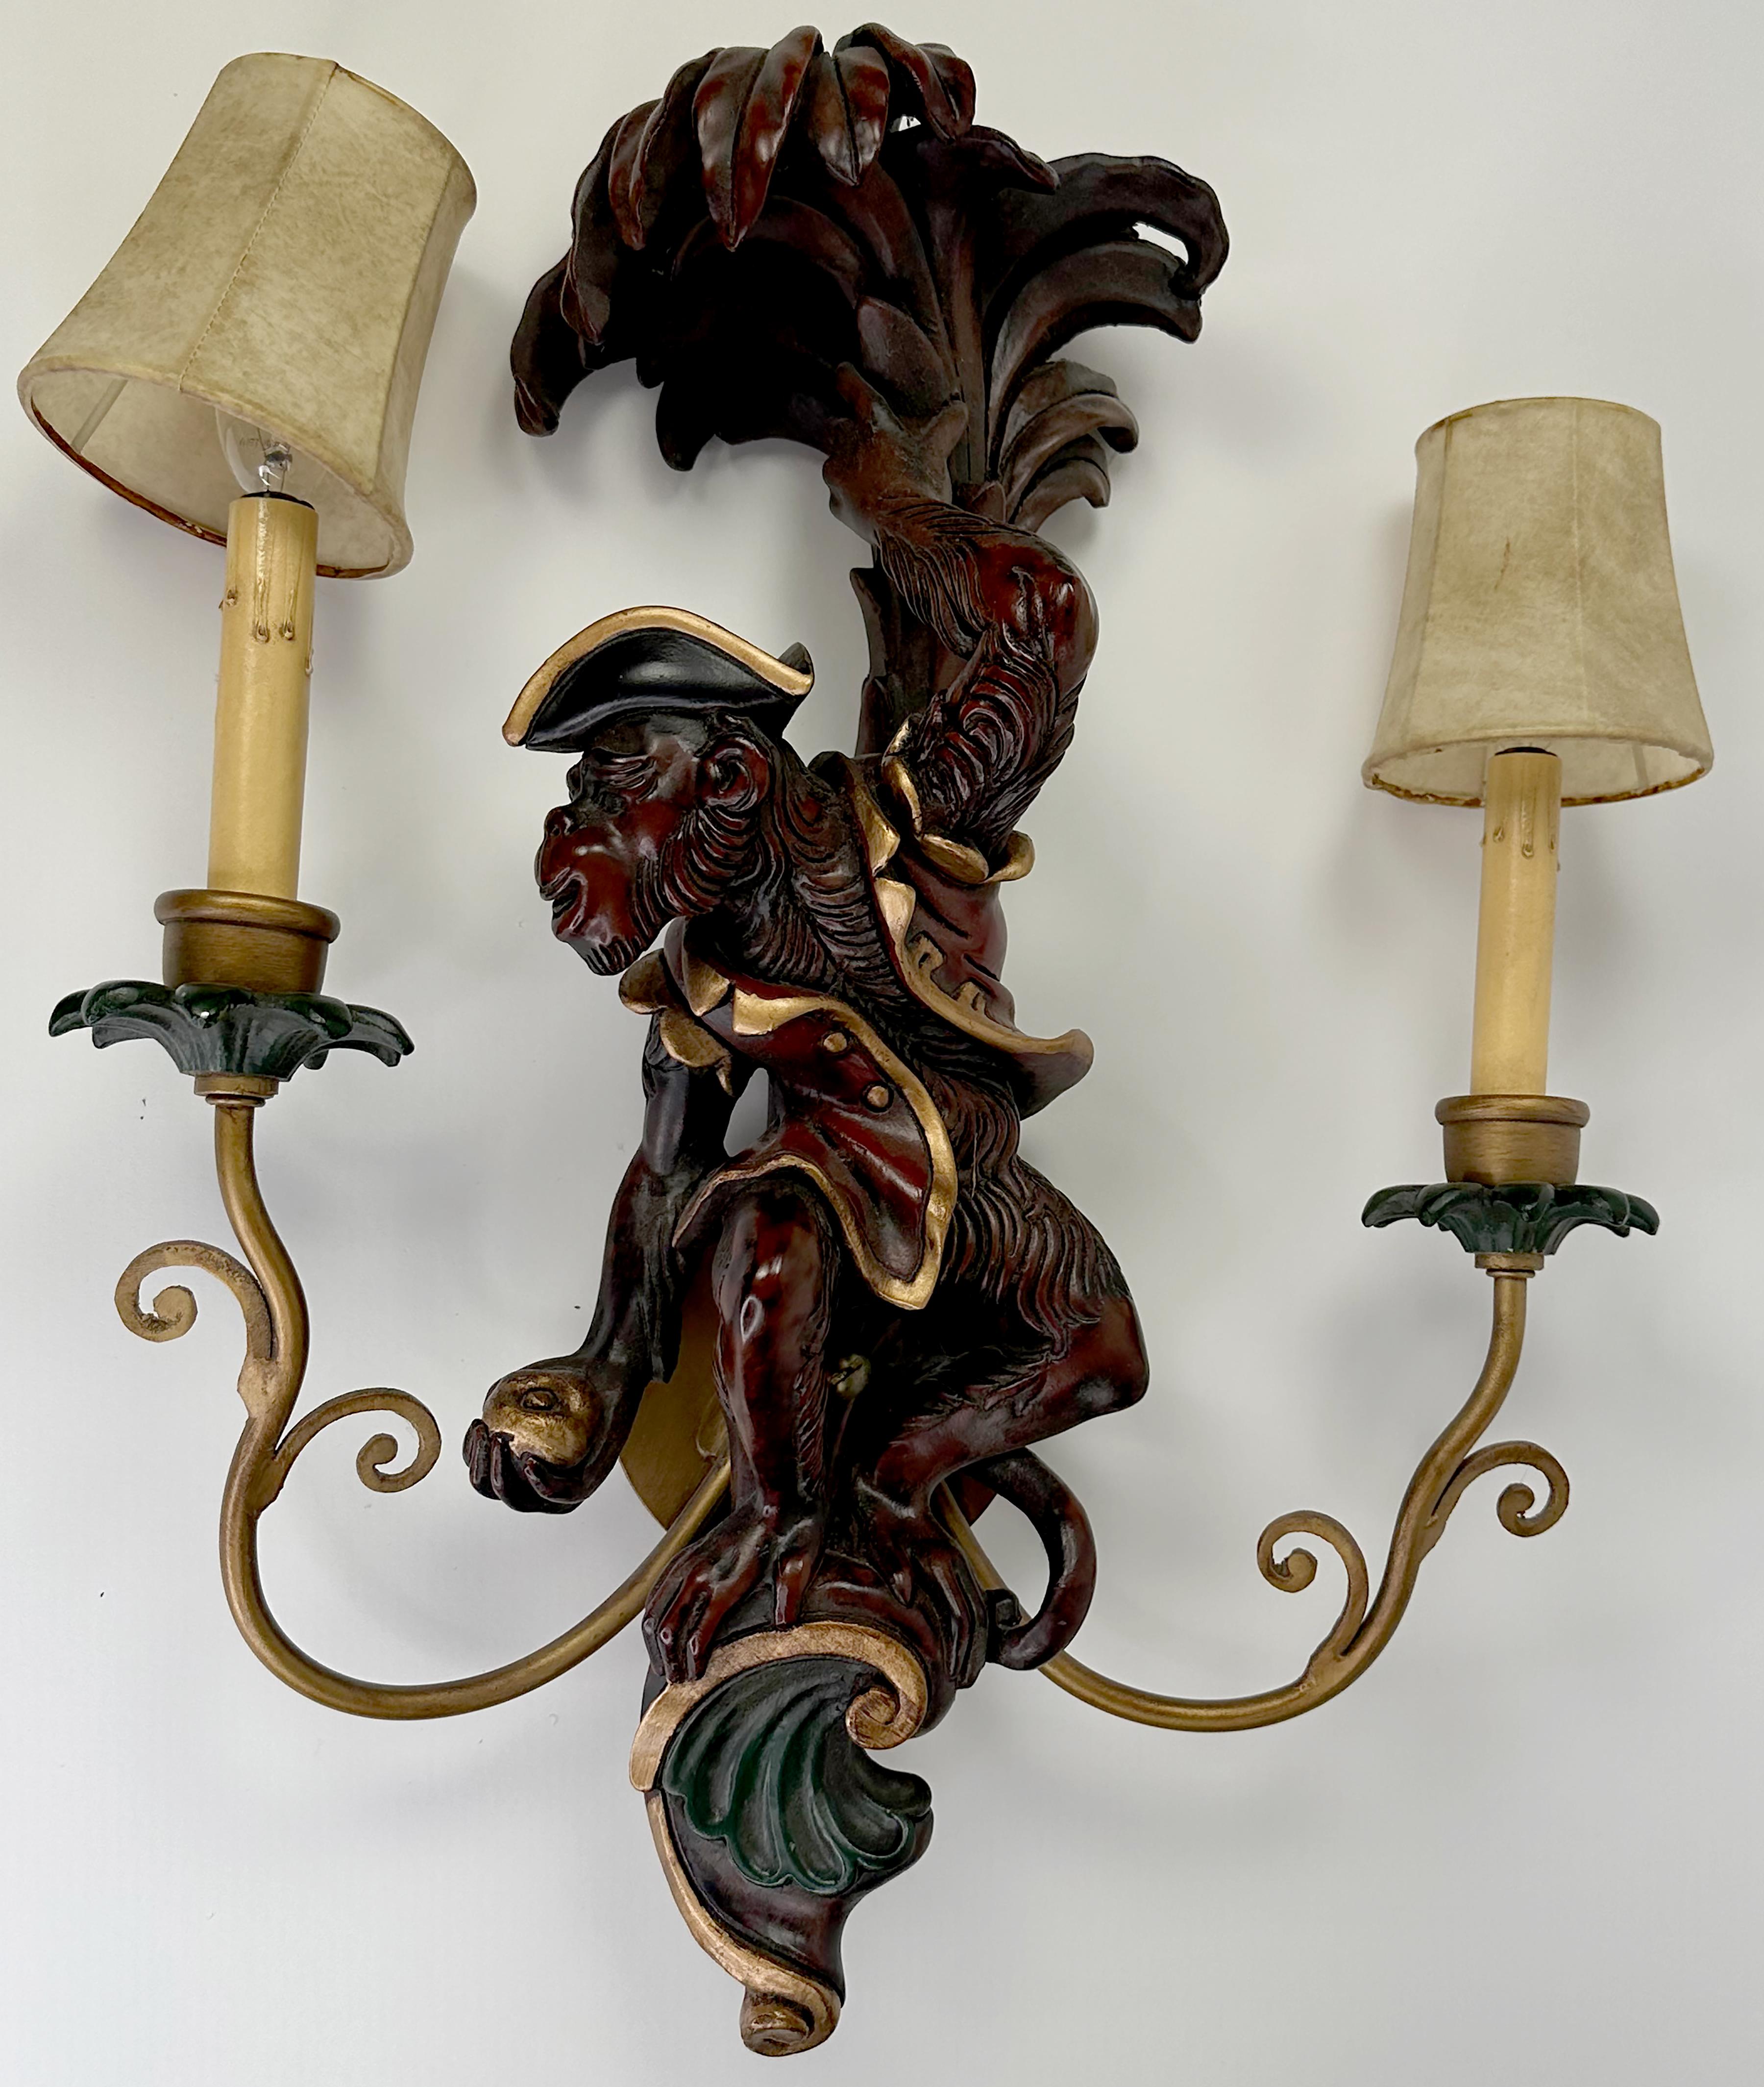 Eine schöne Reihe von handgefertigten Wandleuchte 2 Arm geschnitzten Holz Affe Wandlampen. Handbemaltes Finish mit Braun- und Rottönen und vergoldeten Verzierungen. Der obere Teil über und unter den Figuren ist mit Zierleisten versehen. Die Leuchten